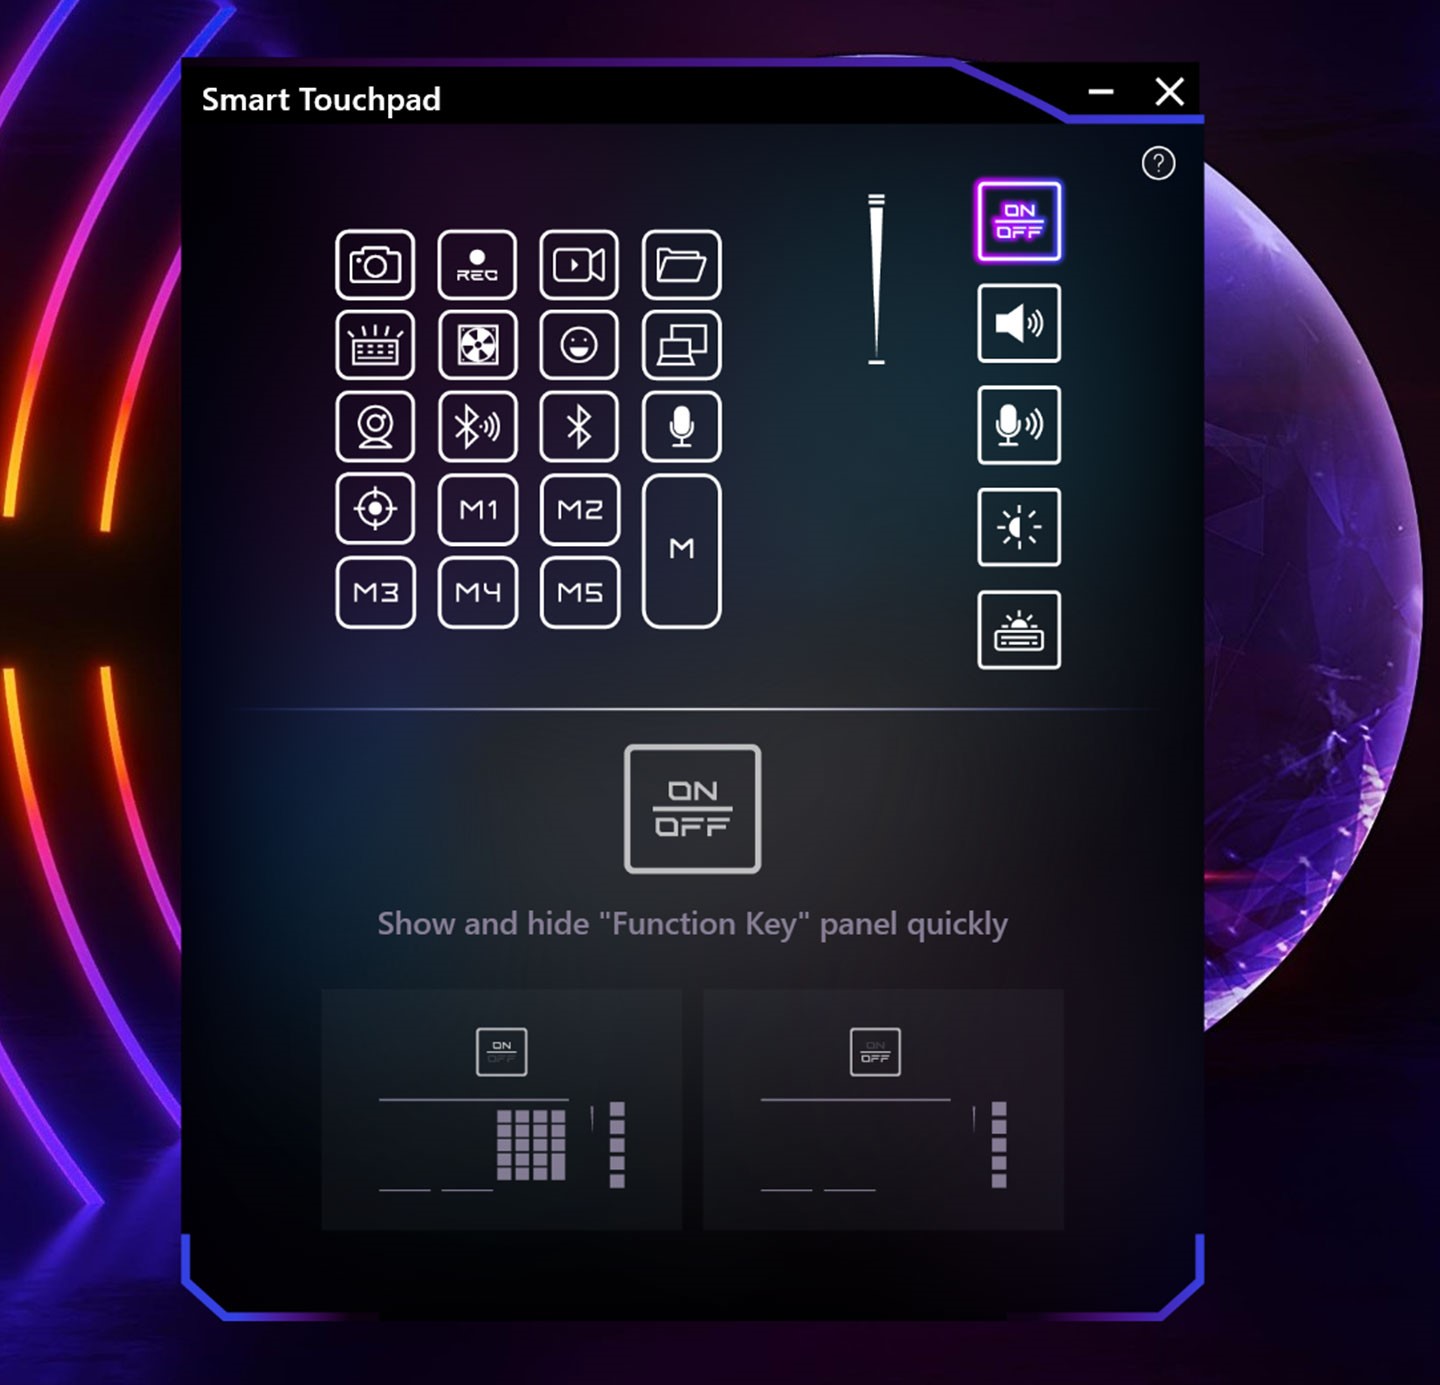 右側的控制功能滑標，在 Smart Touchpad 也有對應的功能說明，像是右上角的電源鈕可快速開啟 / 關閉快捷功能熱鍵與客製化熱鍵區塊。